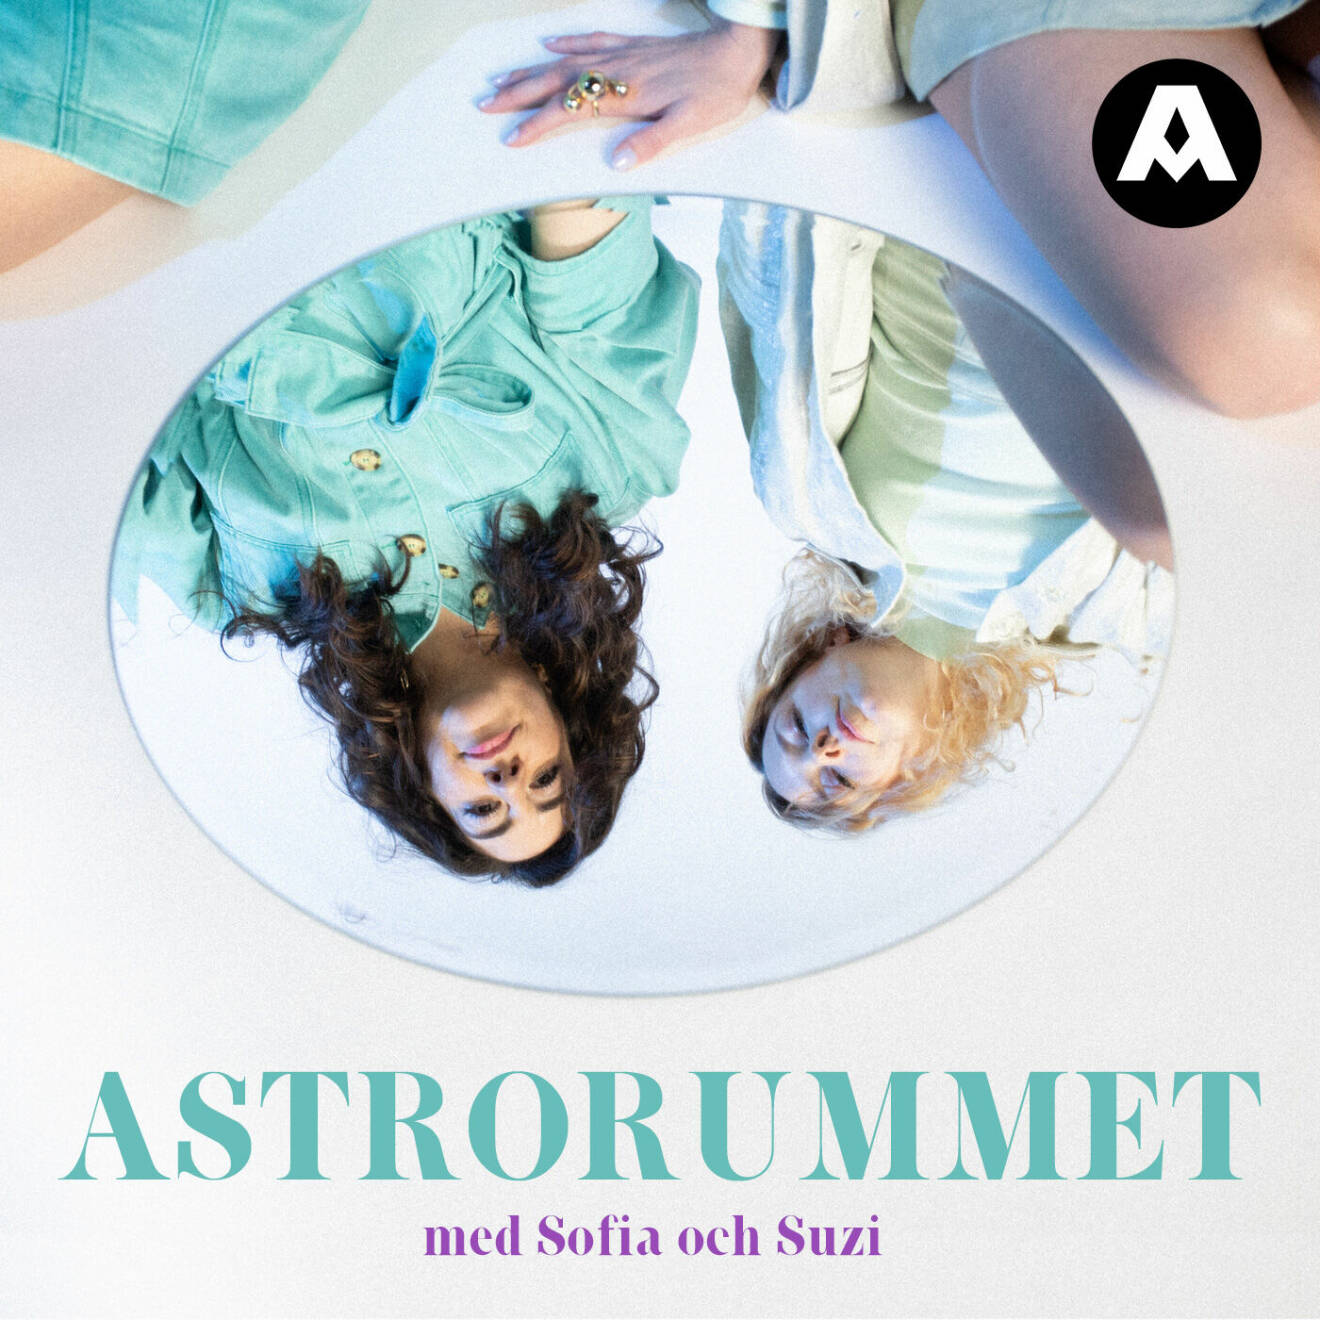 Astrorummet podcast från Aller Media